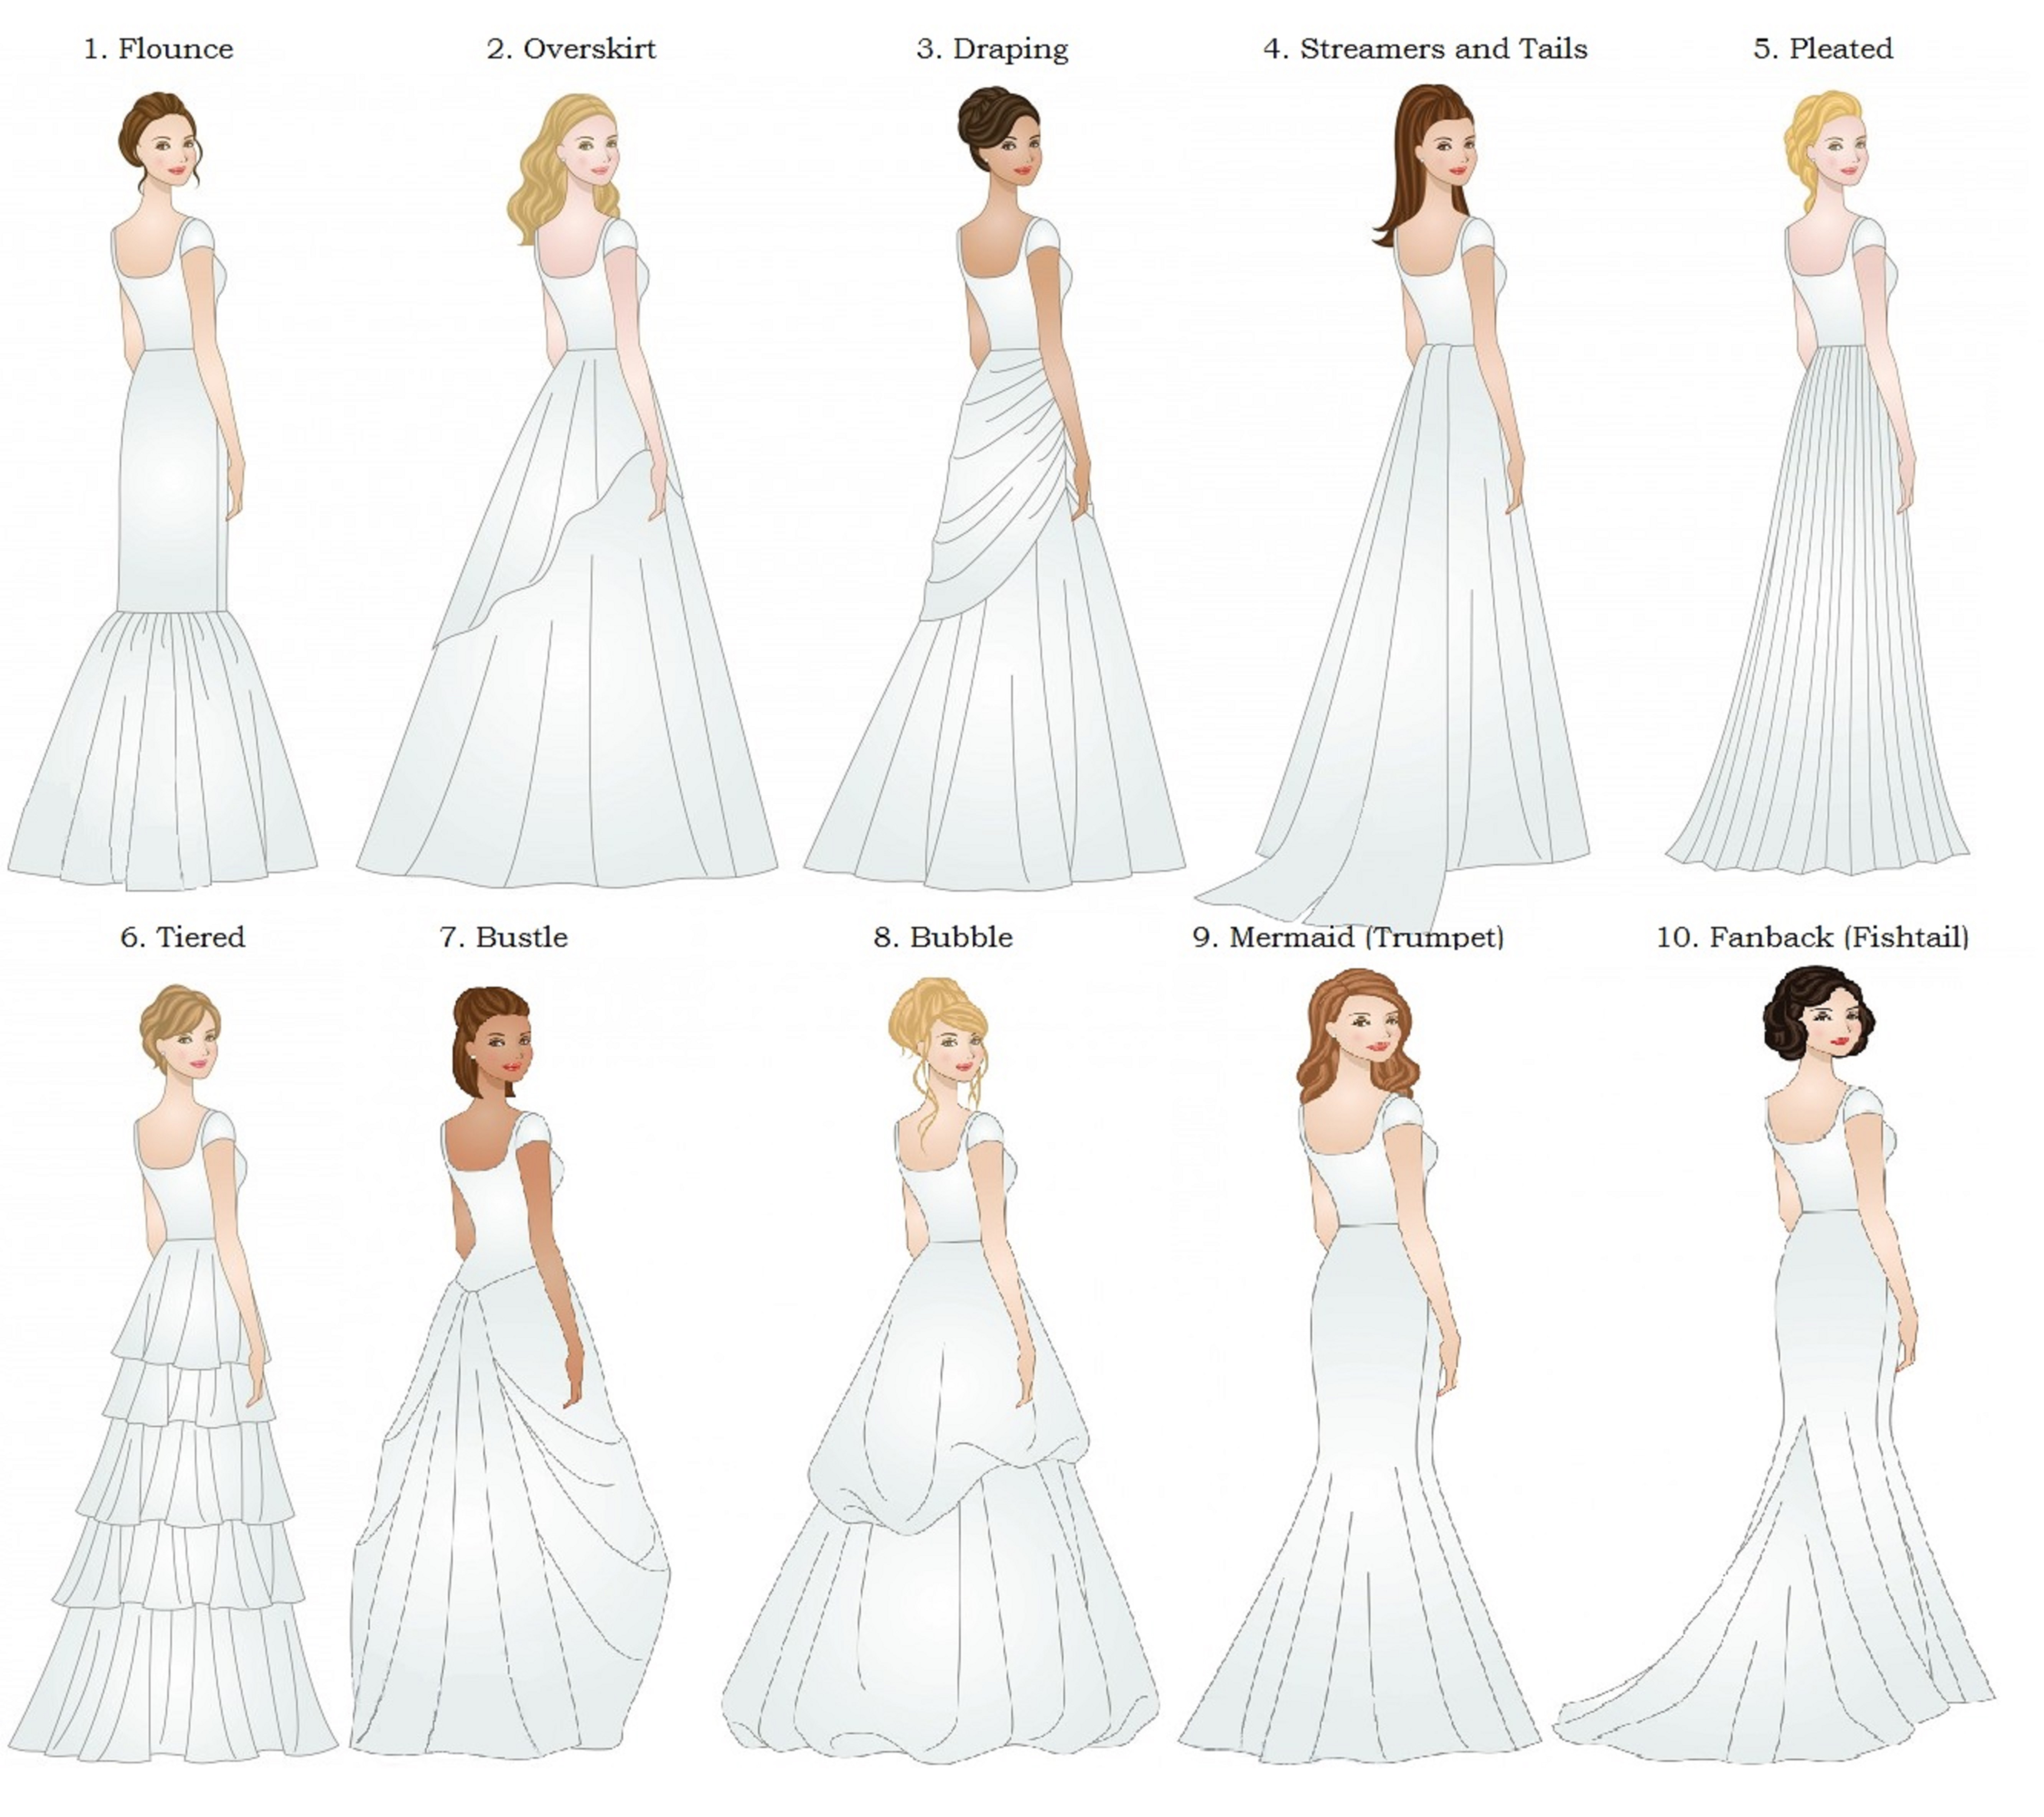 Deciding the Dress: For the Bride  Blog of Honor